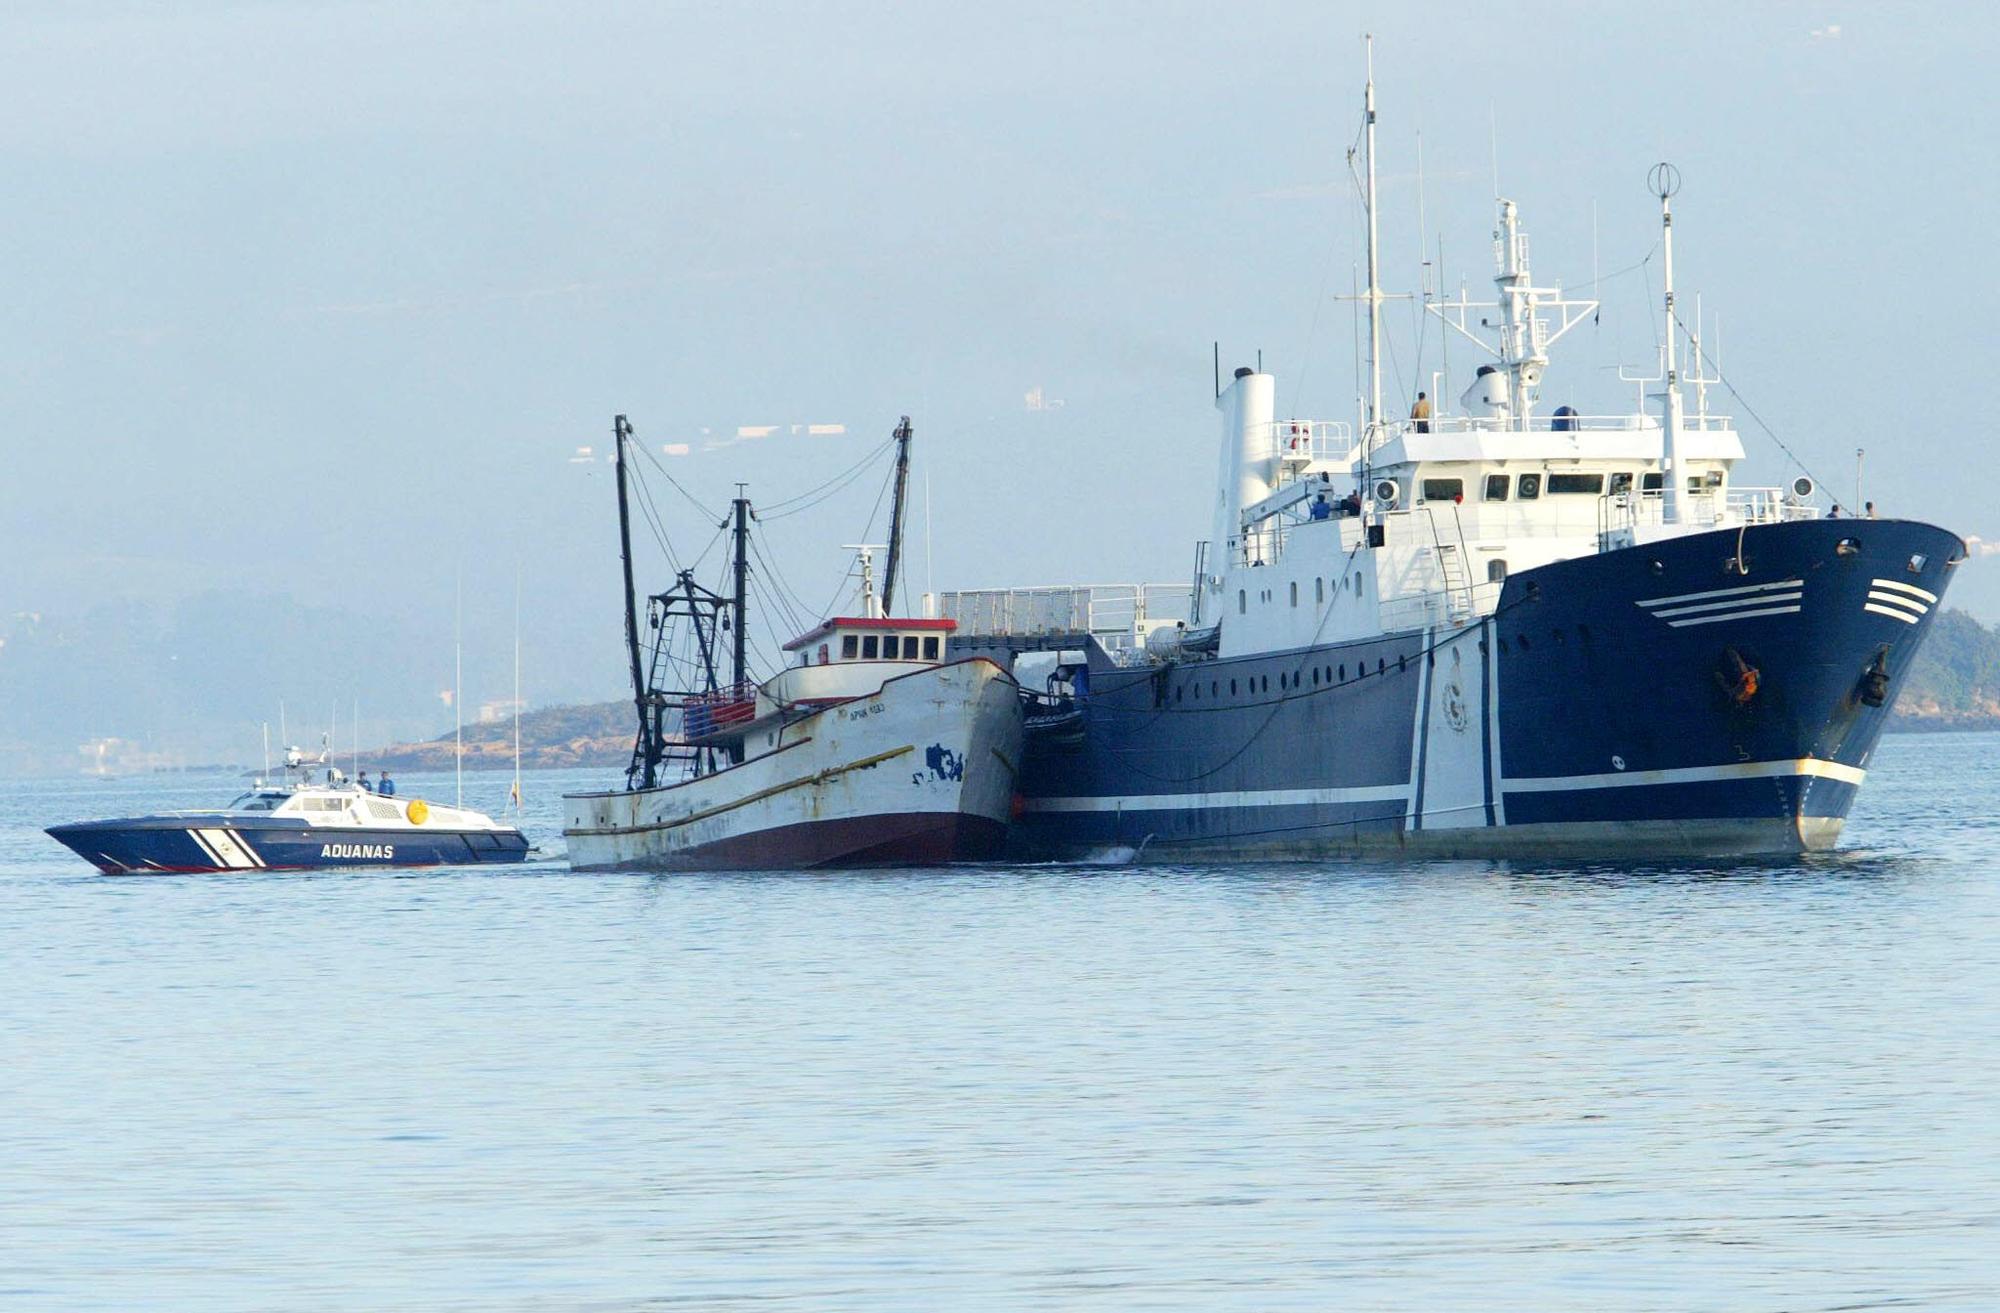 Foto de archivo de un barco custodiado por la Agencia Tributaria en una operación antidroga.